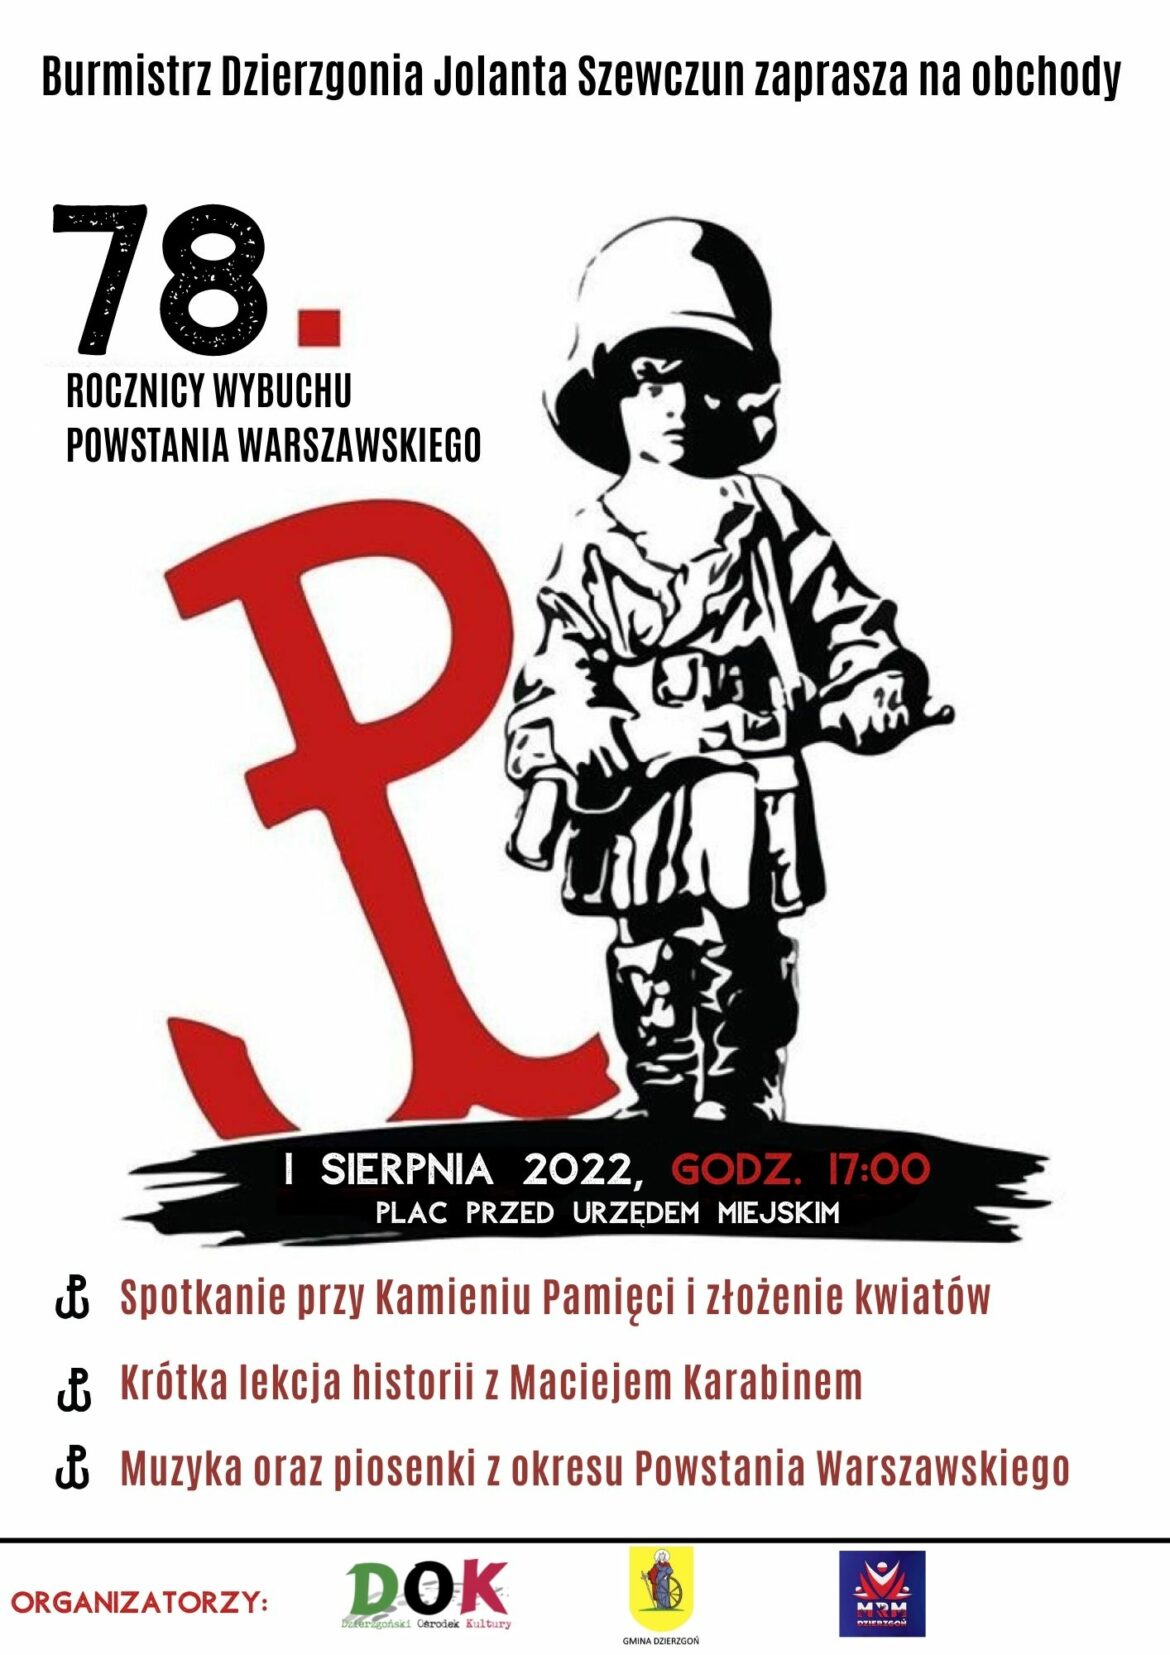 Burmistrz Dzierzgonia zaprasza na obchody 78 rocznicy wybuchu Powstania Warszawskiego.